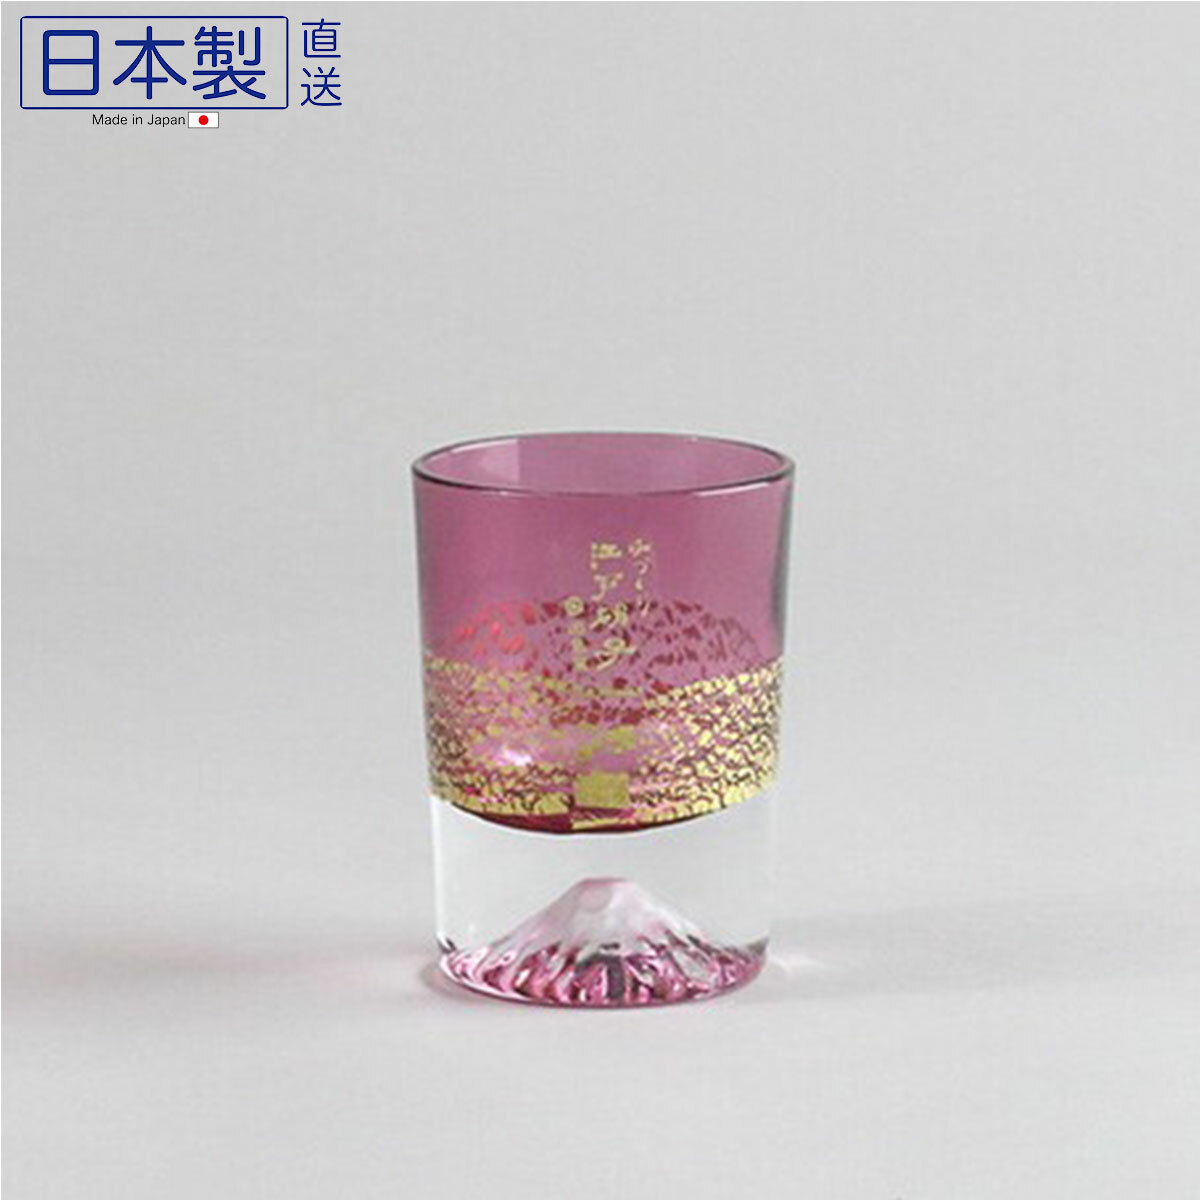 日本田島硝子金箔富士山玻璃杯(櫻) (日本製)